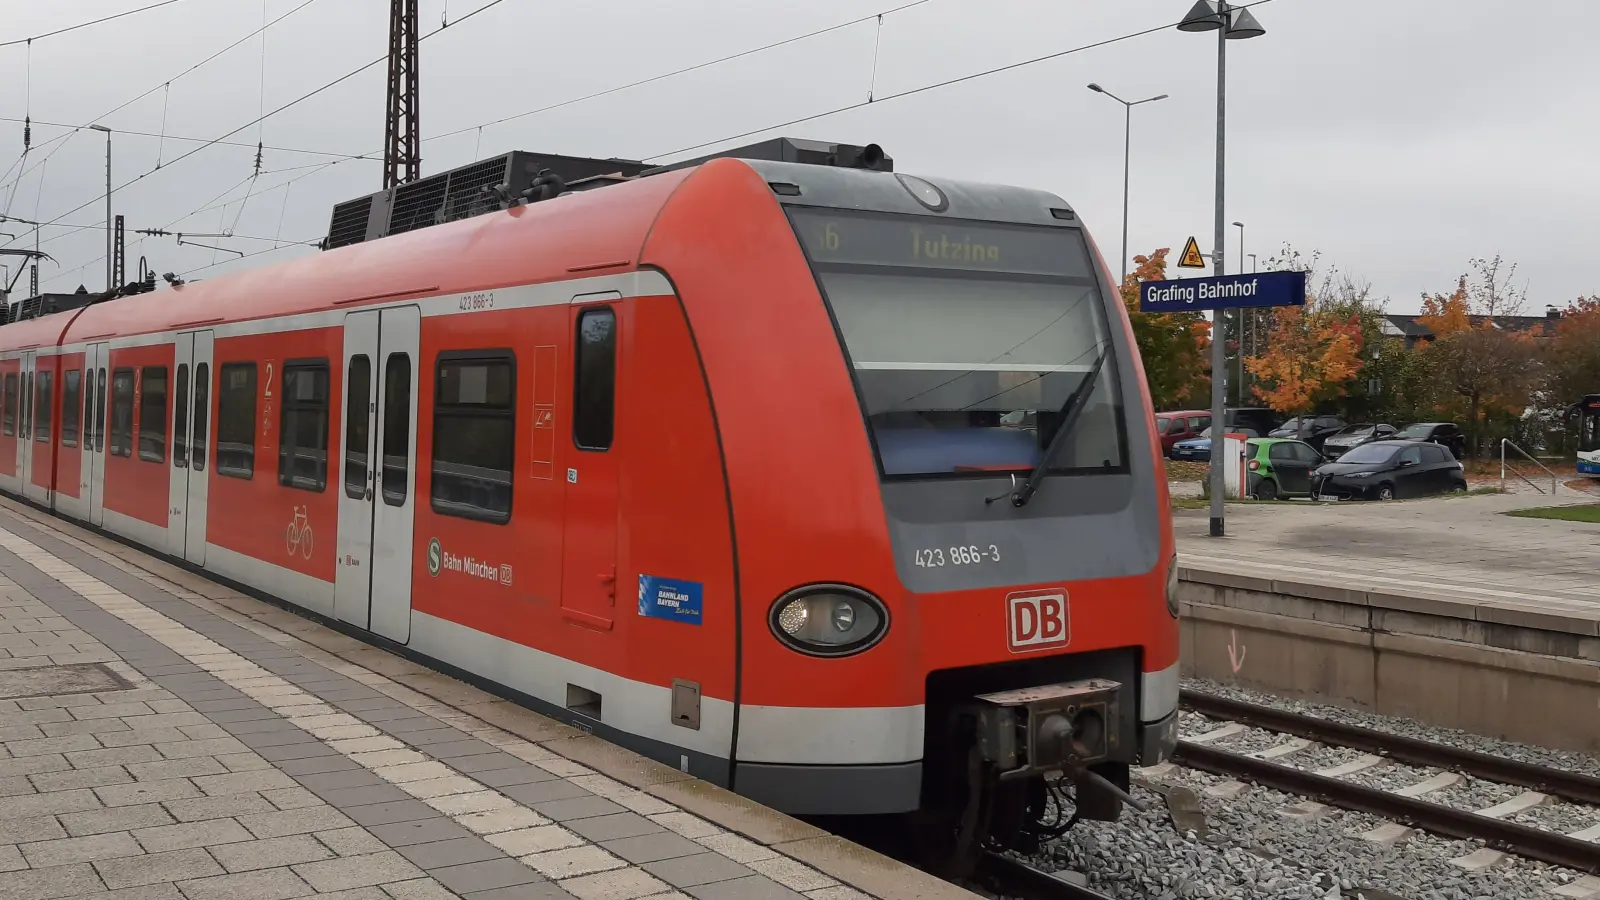 Die S-Bahn von Erding nach München ist nur eingleisig, mit einem eher mäßigen Takt, und daher für größere Pendlerströme nur bedingt geeignet. (Foto: Stefan Dohl)